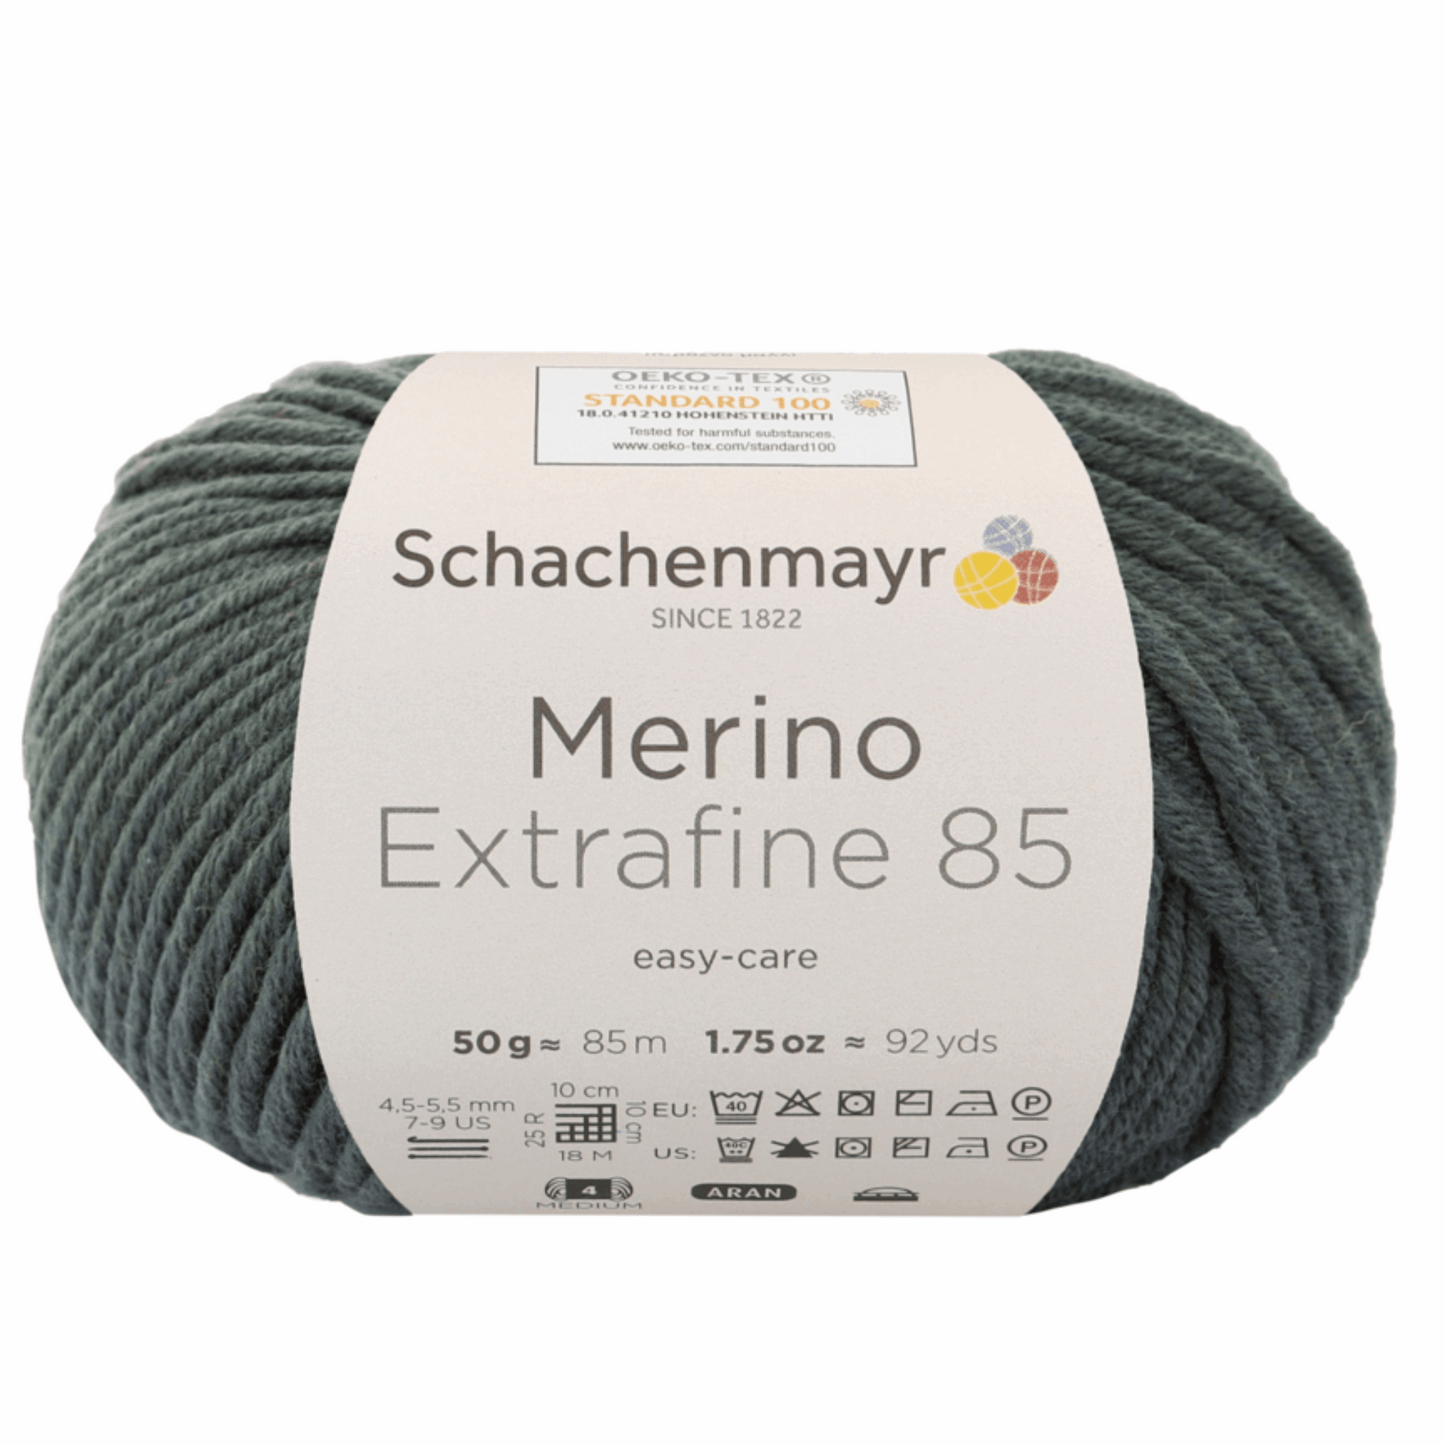 Schachenmayr Merino extrafine 85 50G, 90554, Farbe oliv 271